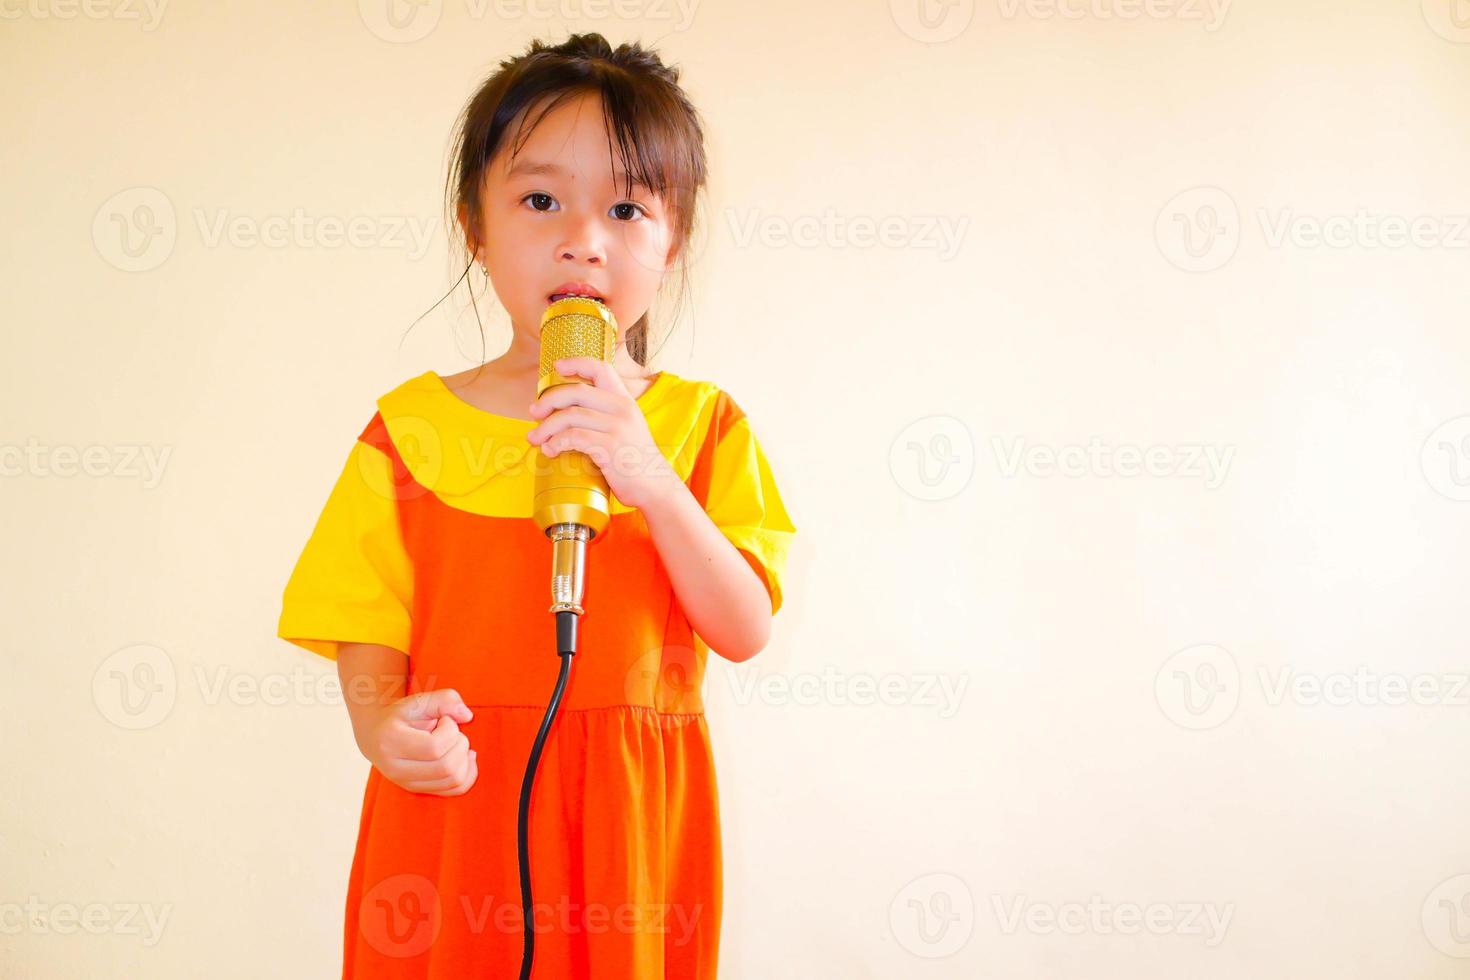 härlig baby flicka bär gul-orange outfit gokowa outfit eller mugunghwa, och hålla guld mikrofon sjunga musik. flickor och tonåring mode klänning. foto